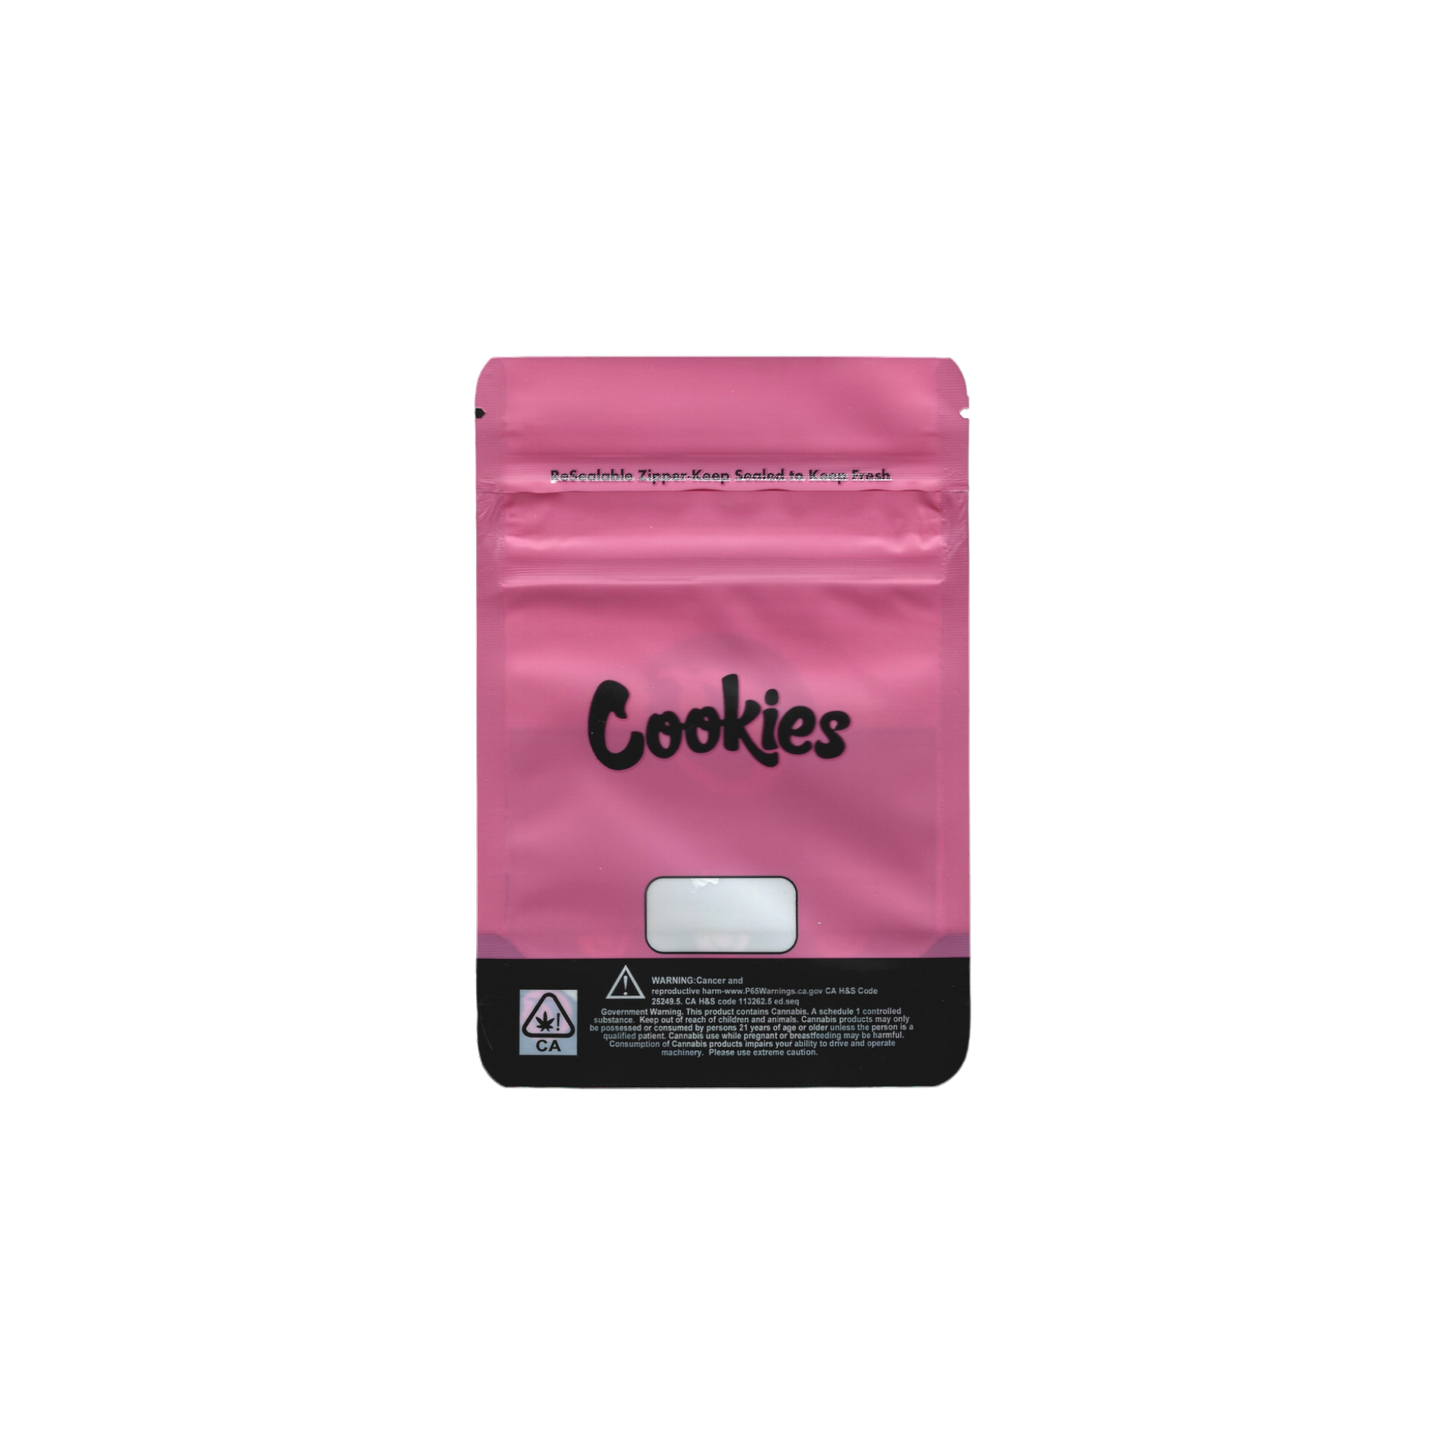 10x Cookies pink Mylar Bag 7g - Leer